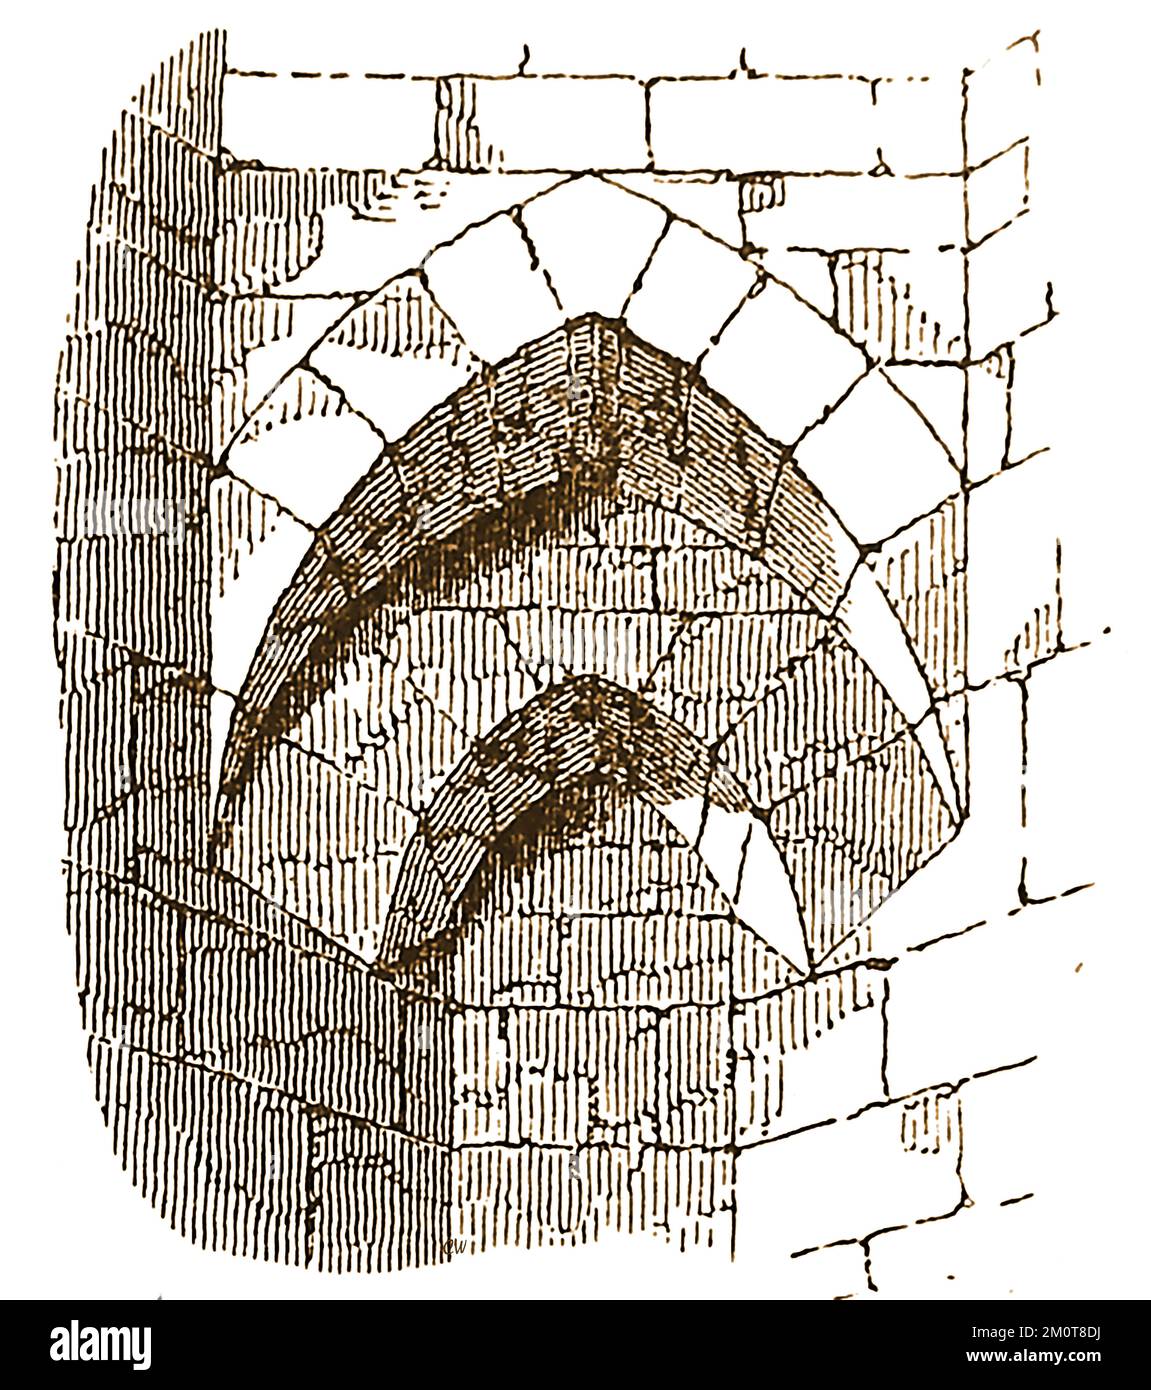 Un'incisione del 19th° secolo che mostra un SQUINCH, una caratteristica architettonica del Maxstoke Priory, un convento agostiniano nel Warwickshire, Inghilterra.(consacrato il 8 luglio 1342 ). Uno squinch è una struttura diritta o arcuata attraverso un angolo interno di una torre quadrata per portare una sovrastruttura come una cupola o un'altra caratteristica nel tentativo di livellata il peso sopra di essa. Foto Stock